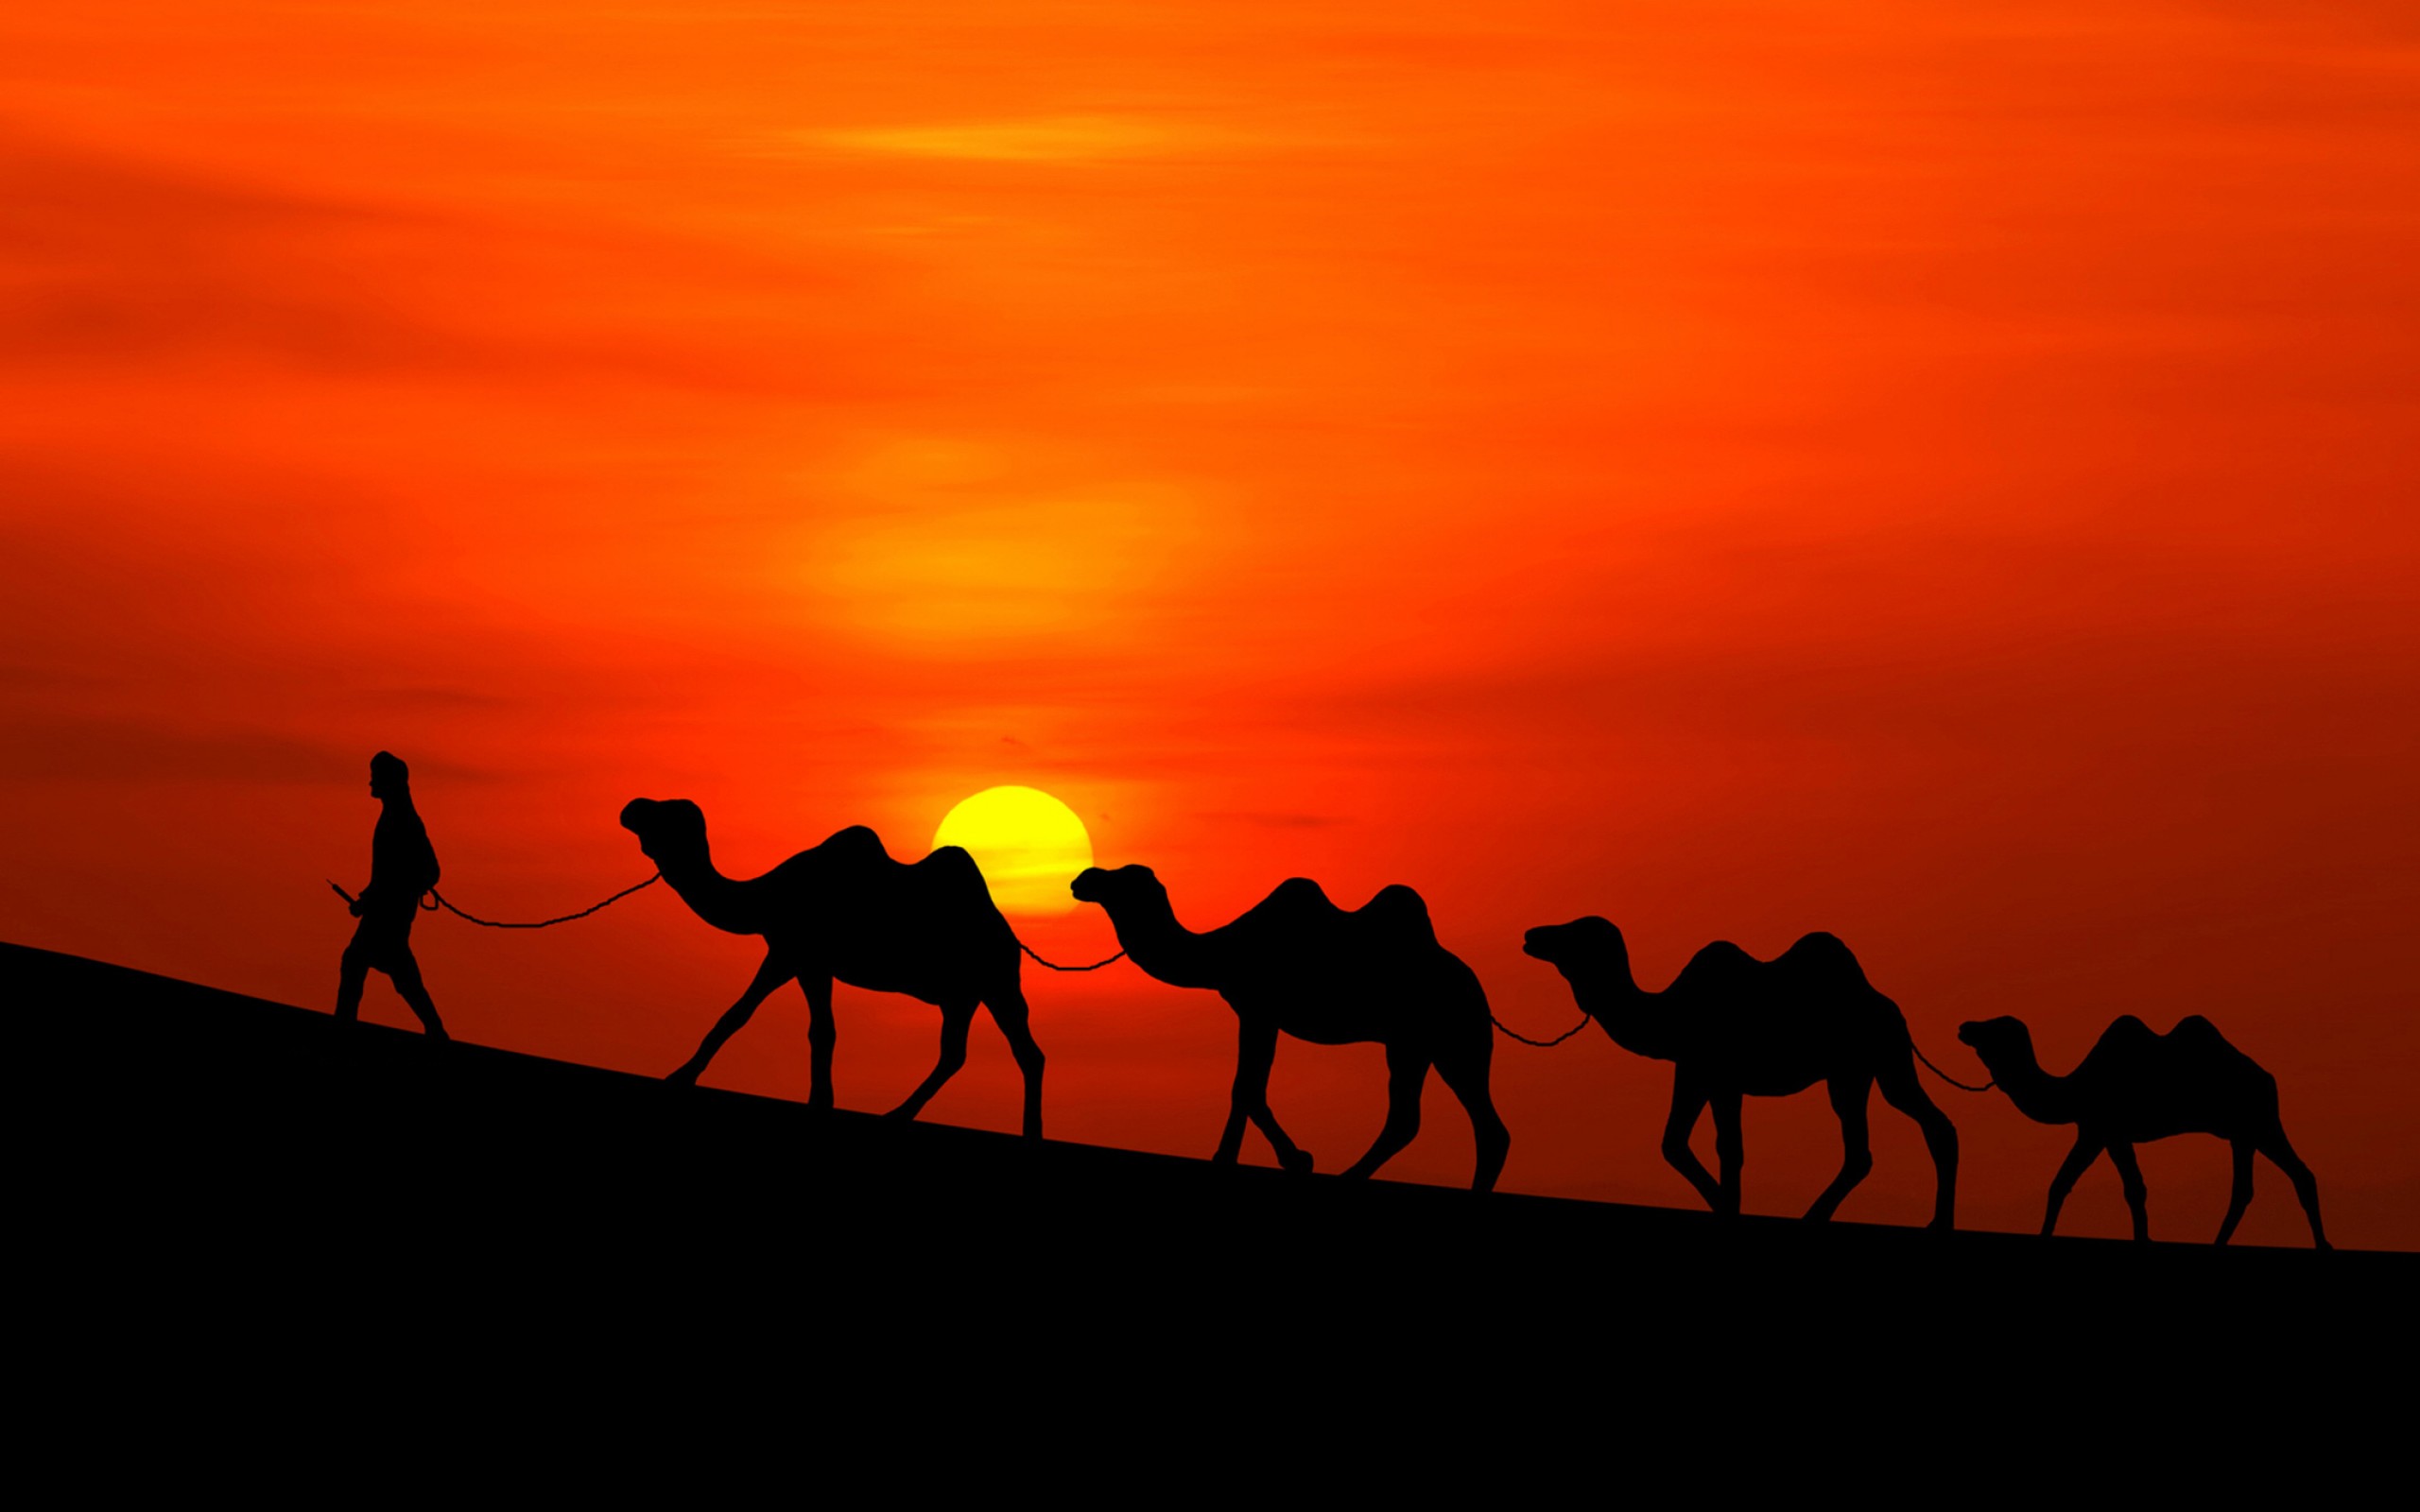 Караван картинка. Великий шелковый путь Караван. Шелковый путь Караван верблюдов. Верблюд Караван пустыни. Верблюд в пустыне.